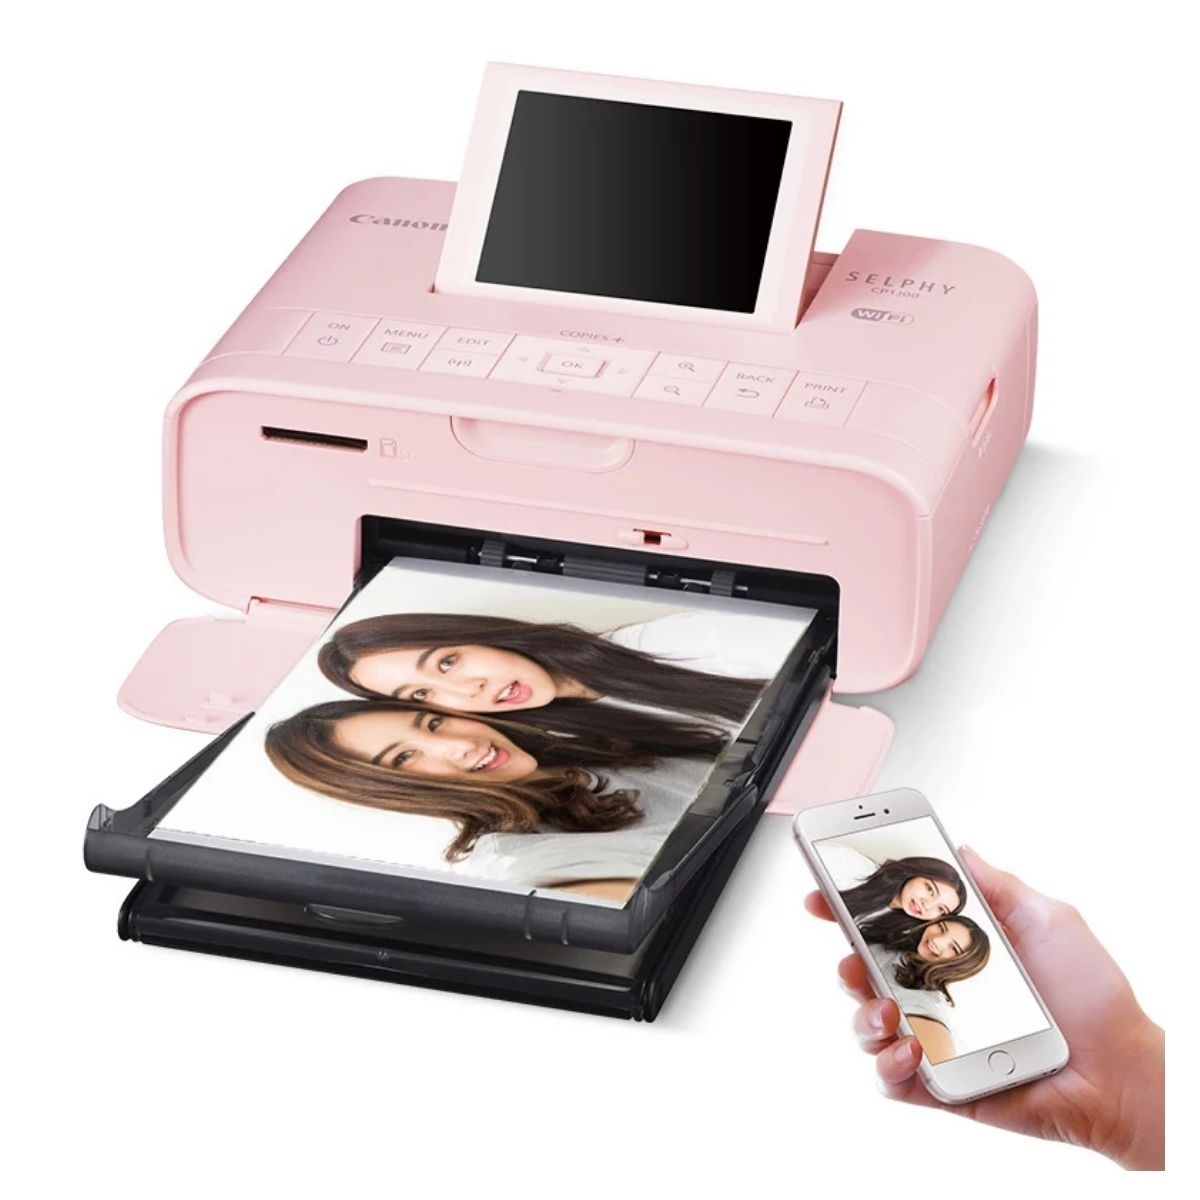 Принтер для распечатки фотографий с телефона